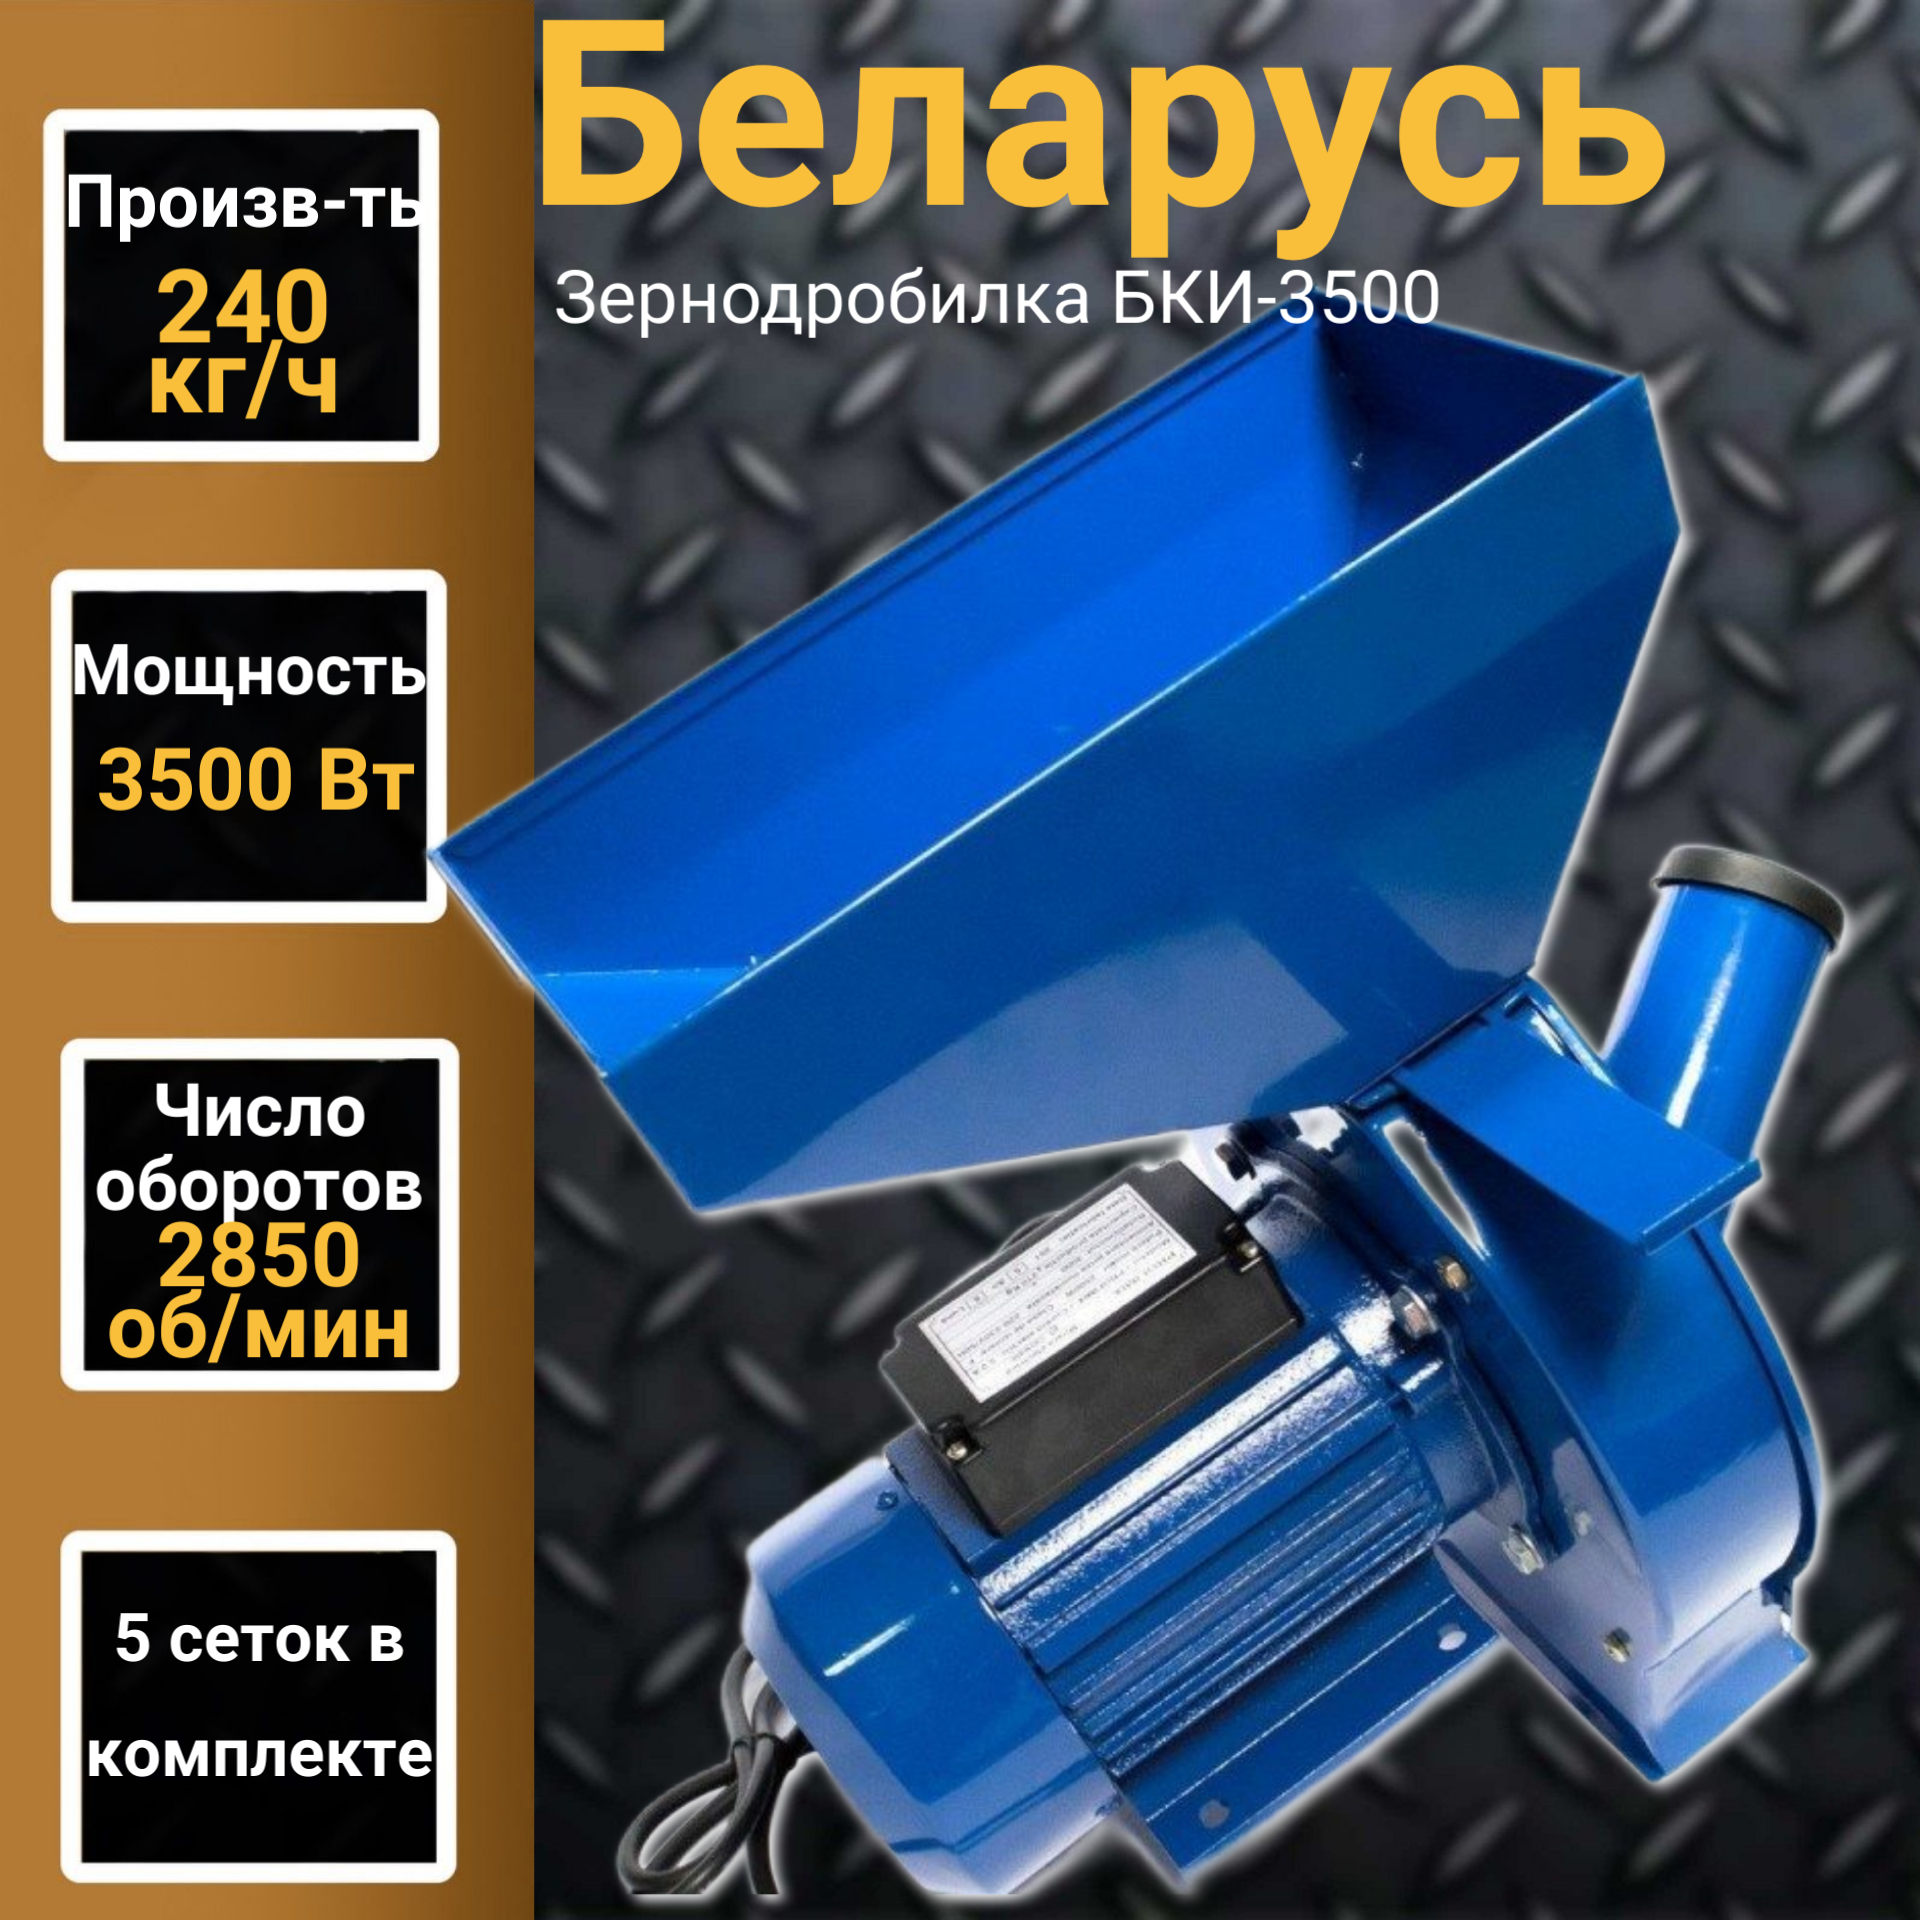 Зернодробилка Беларусь БКИ-3500, 5 сеток, 3500Вт, 240 кг/ч, 2850 об/мин